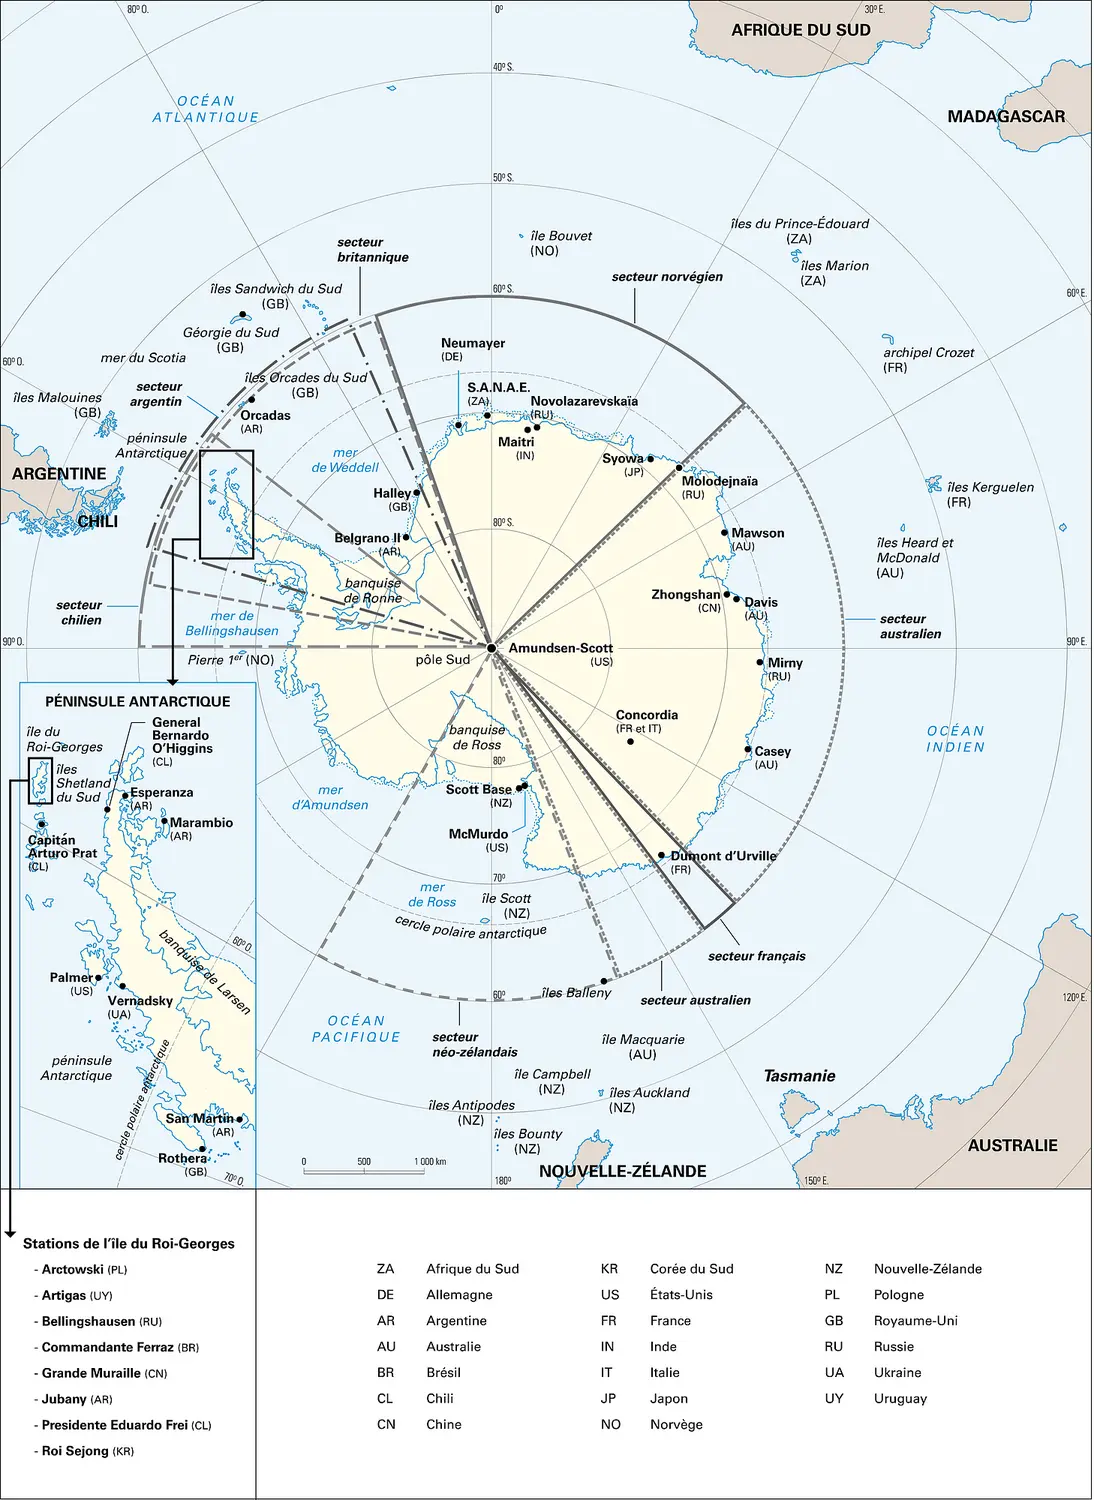 Antarctique : situation politique en 2001